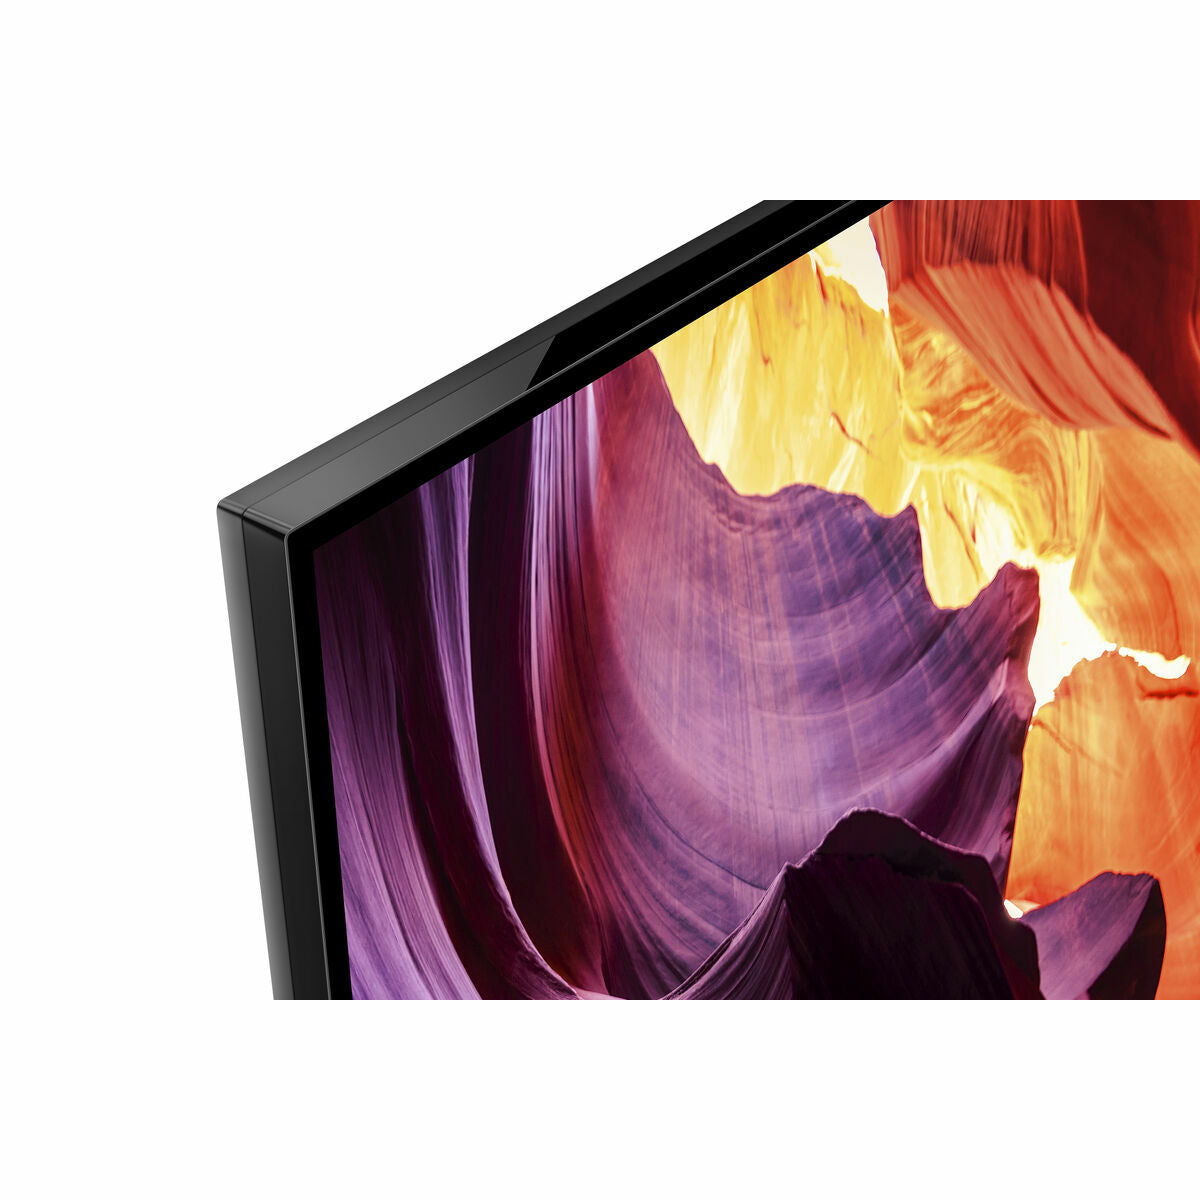 Smart TV Sony KD55X81K 55" 4K Ultra HD LED WIFI